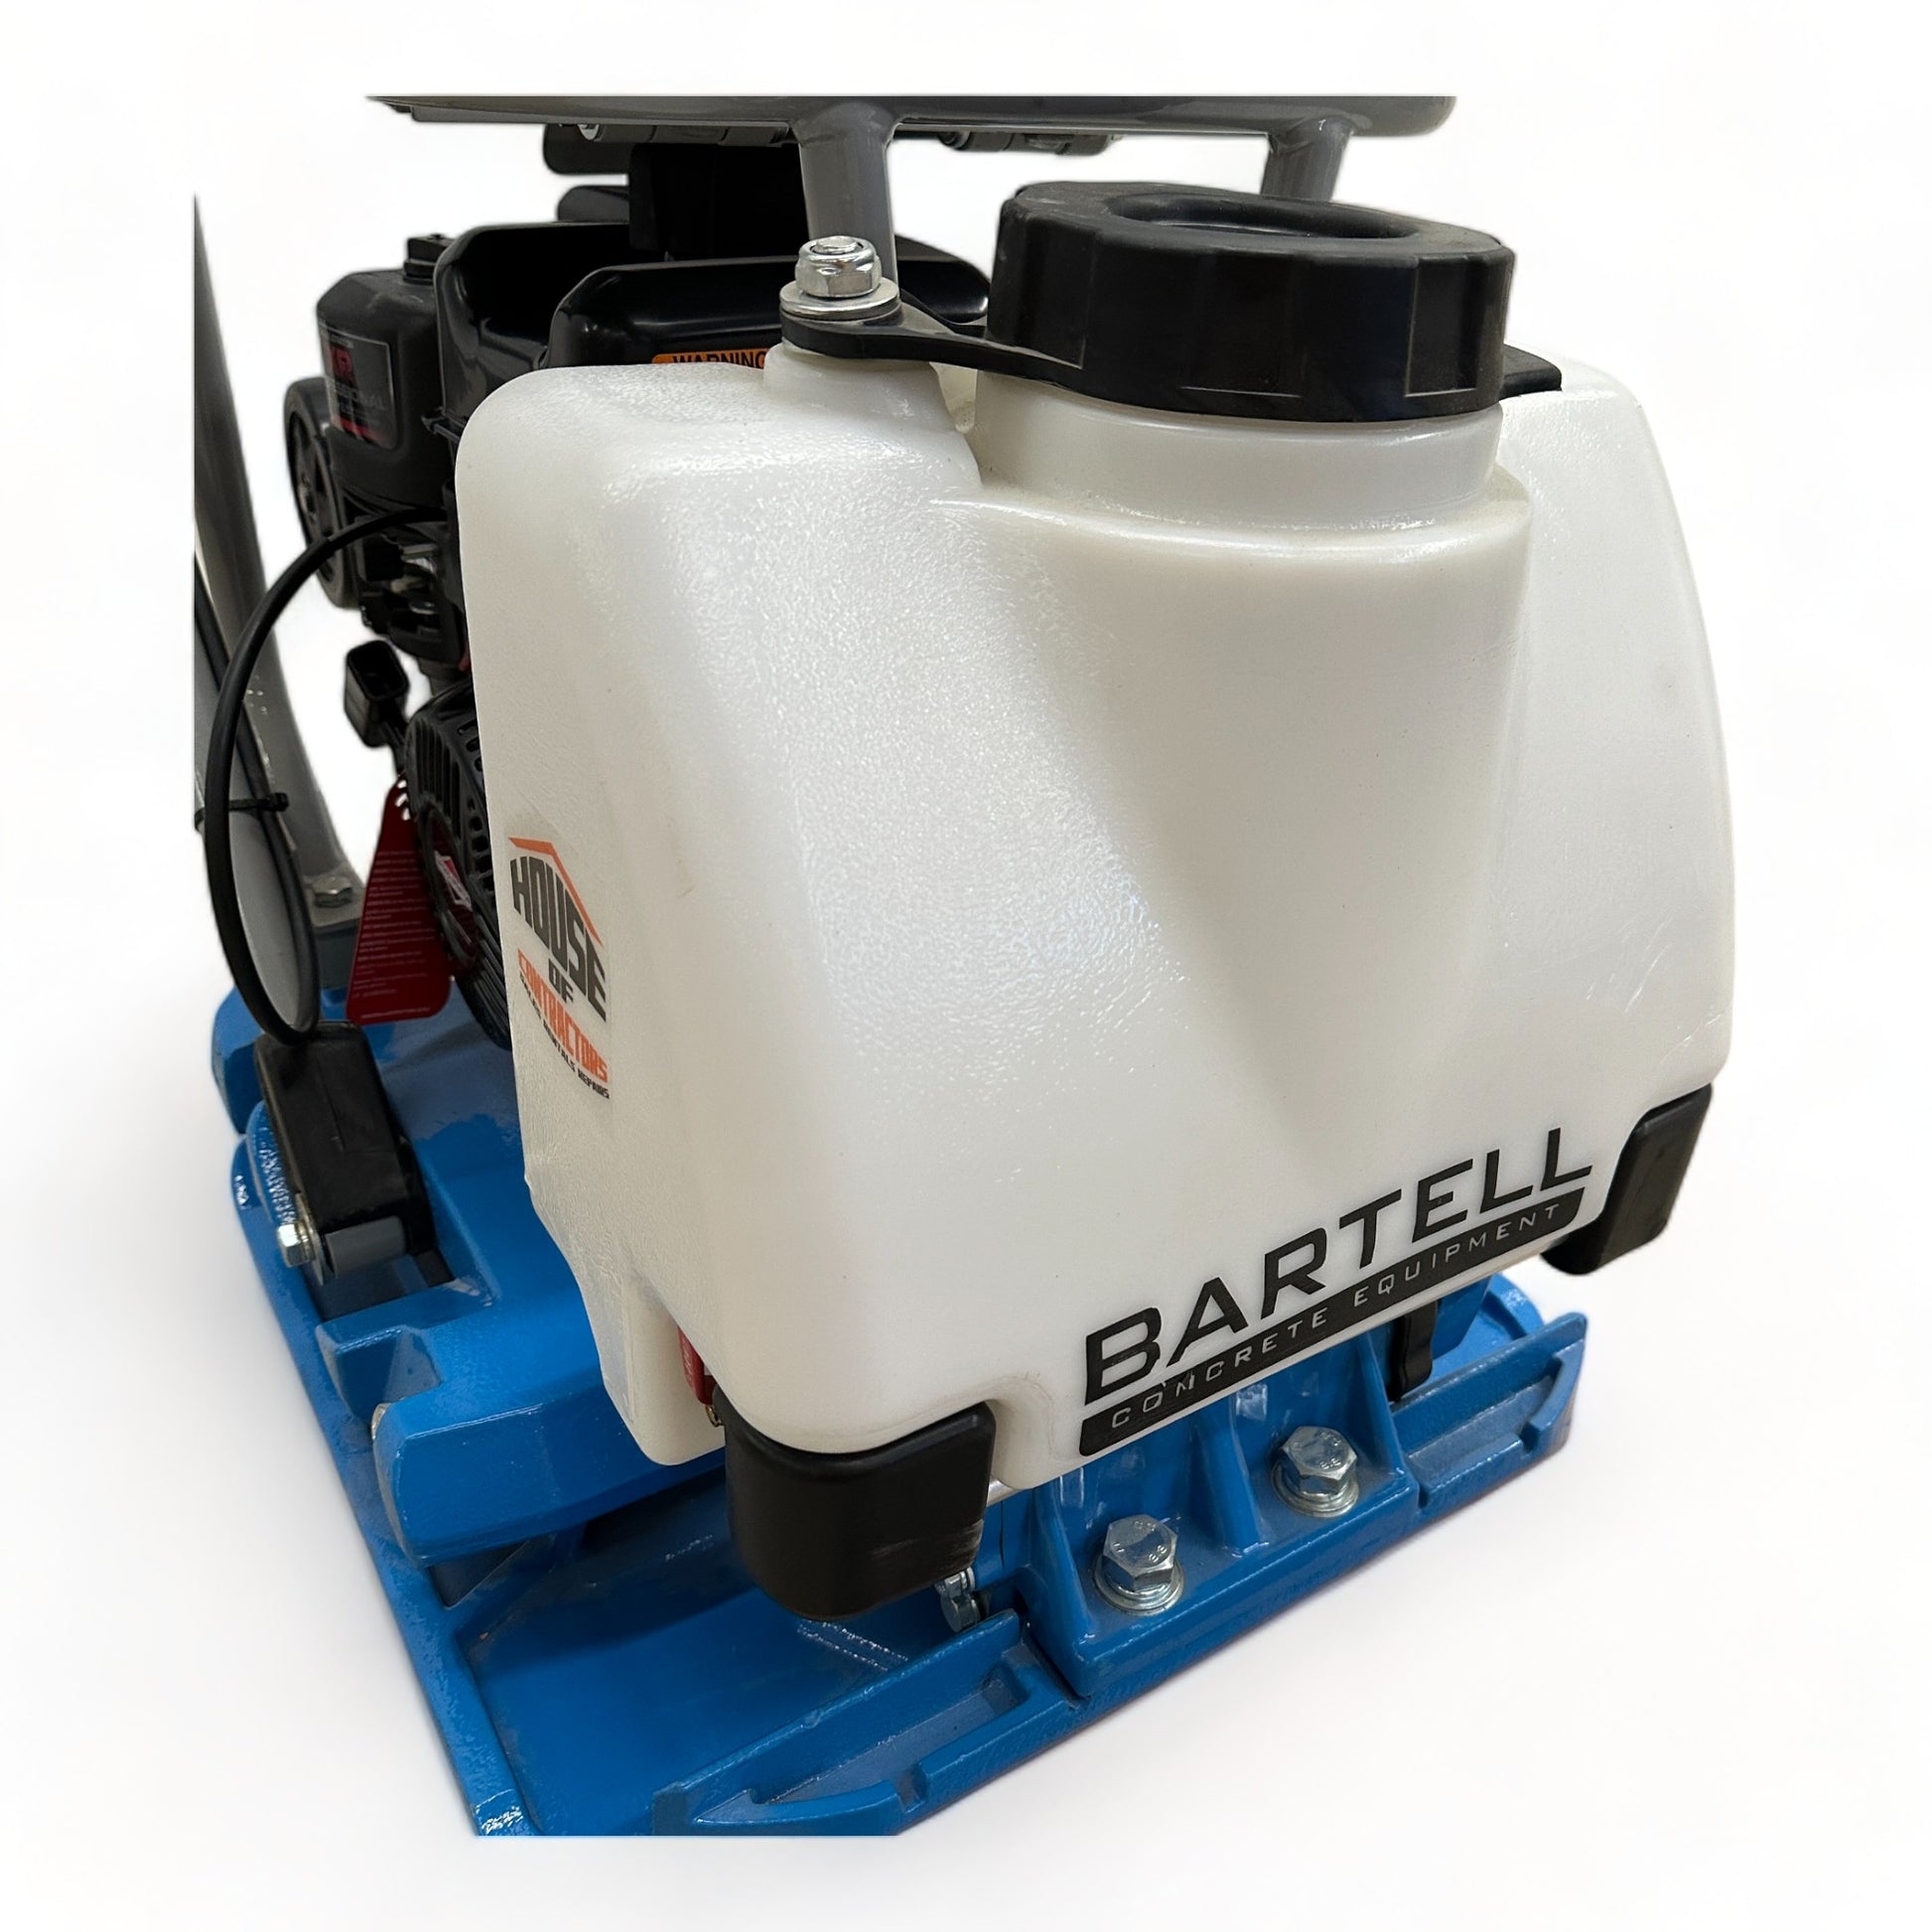 Compacteur à plaque réversible Bartell BCF1570 2022